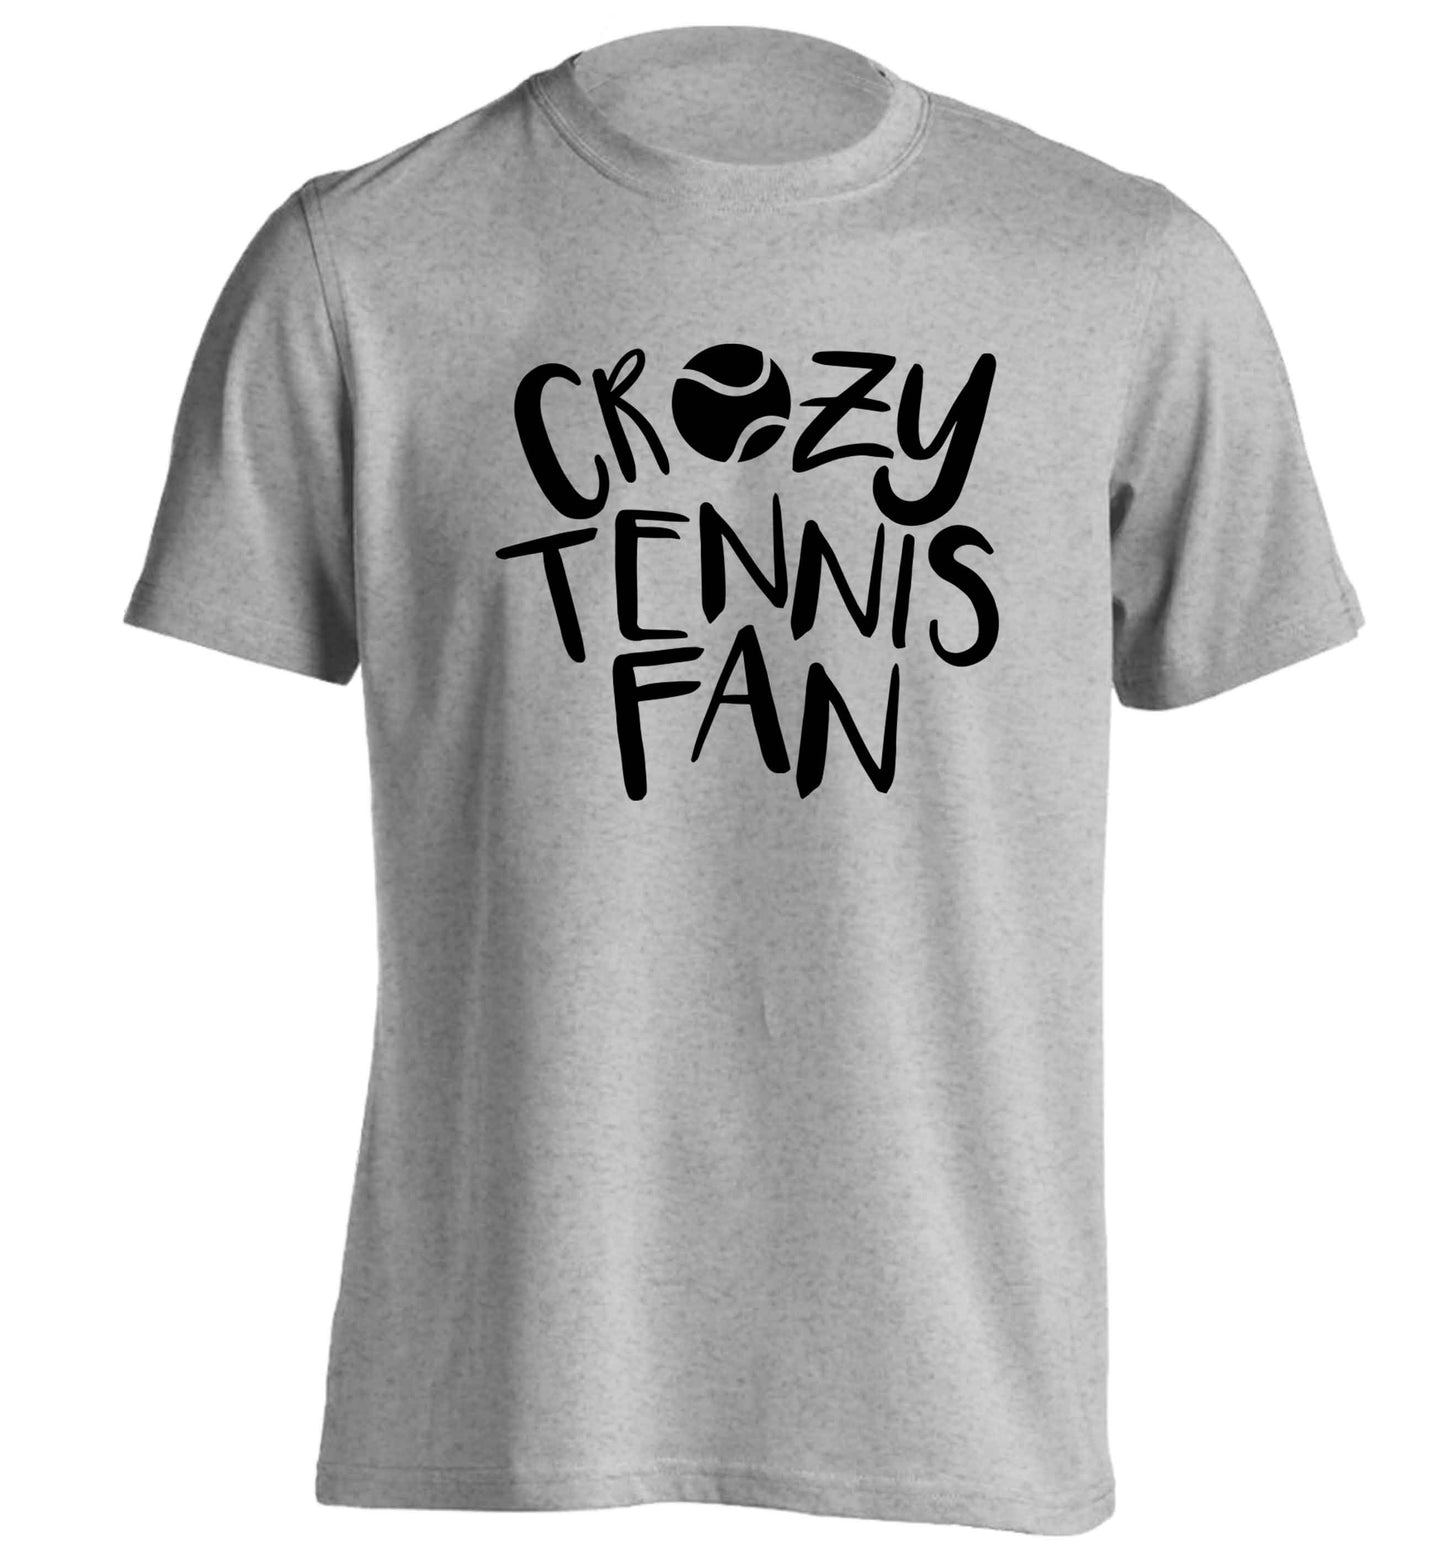 Crazy tennis fan adults unisex grey Tshirt 2XL